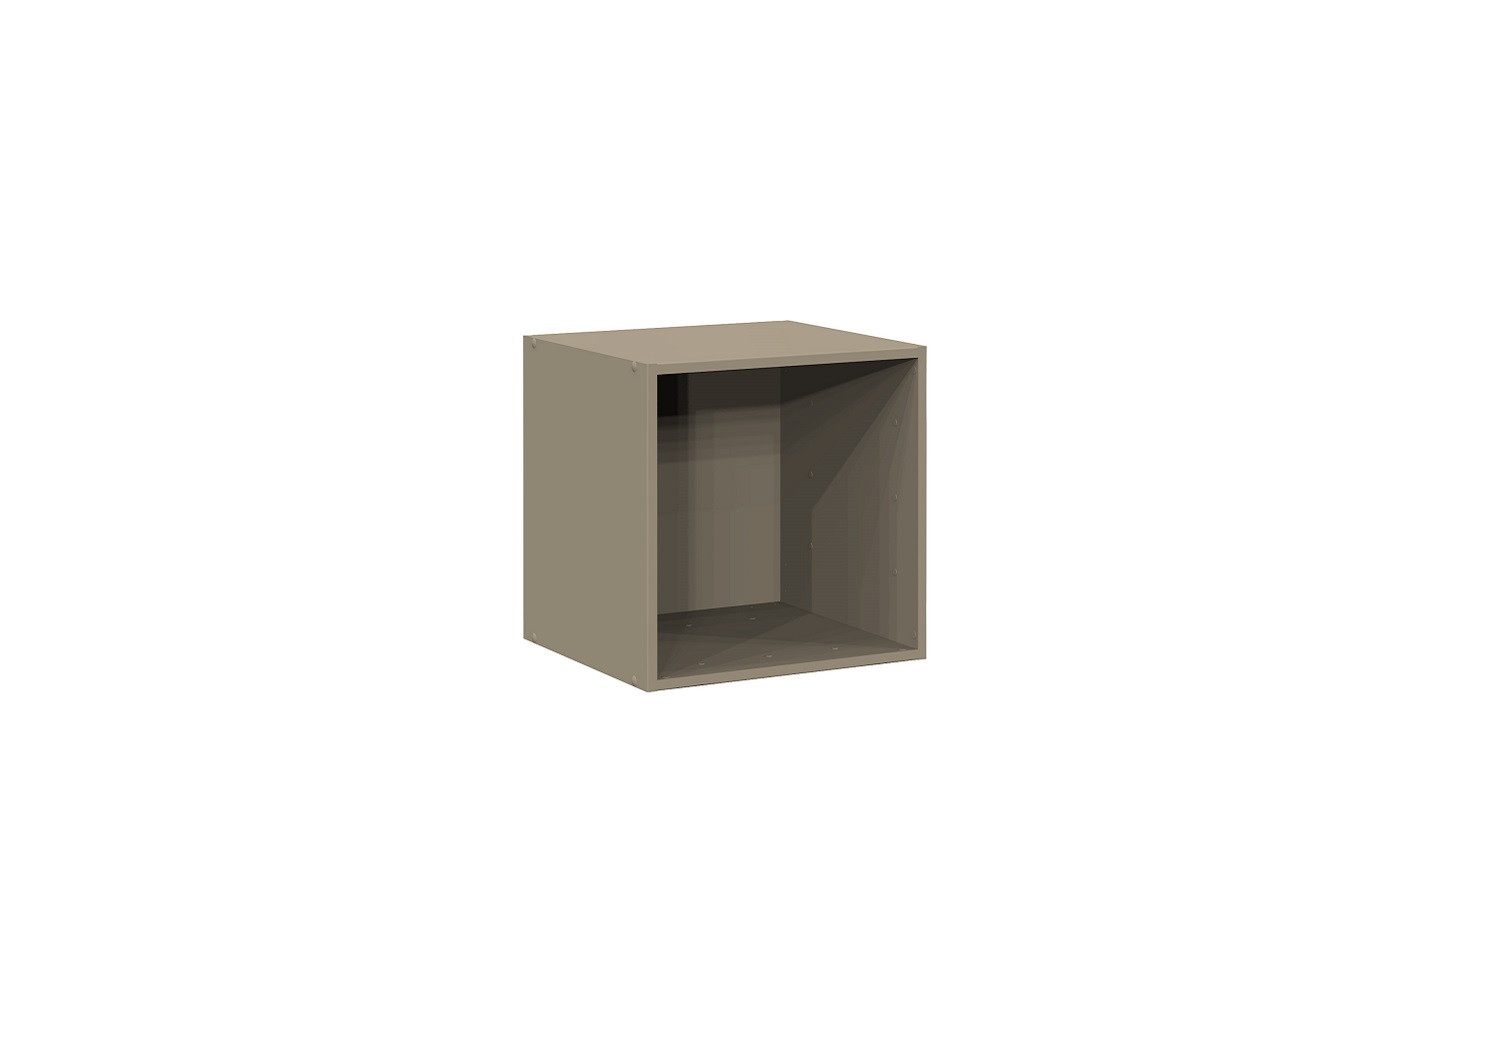 Bilrich Storage Furniture - Multi Kaz 1x1 Cube Taupe